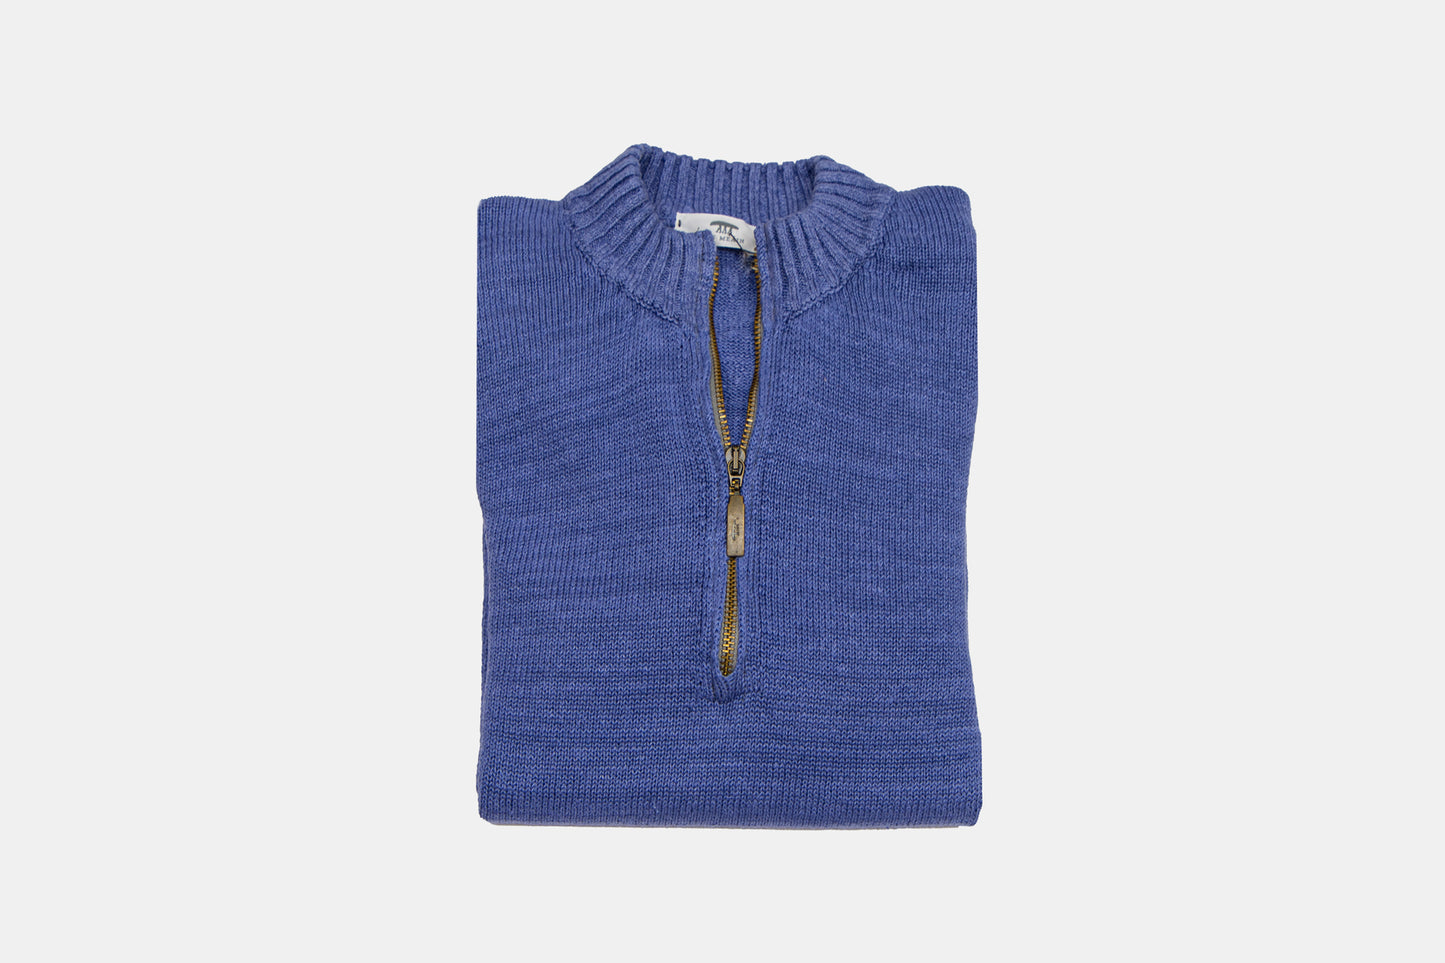 Inis Meáin – lavender sweatshirt